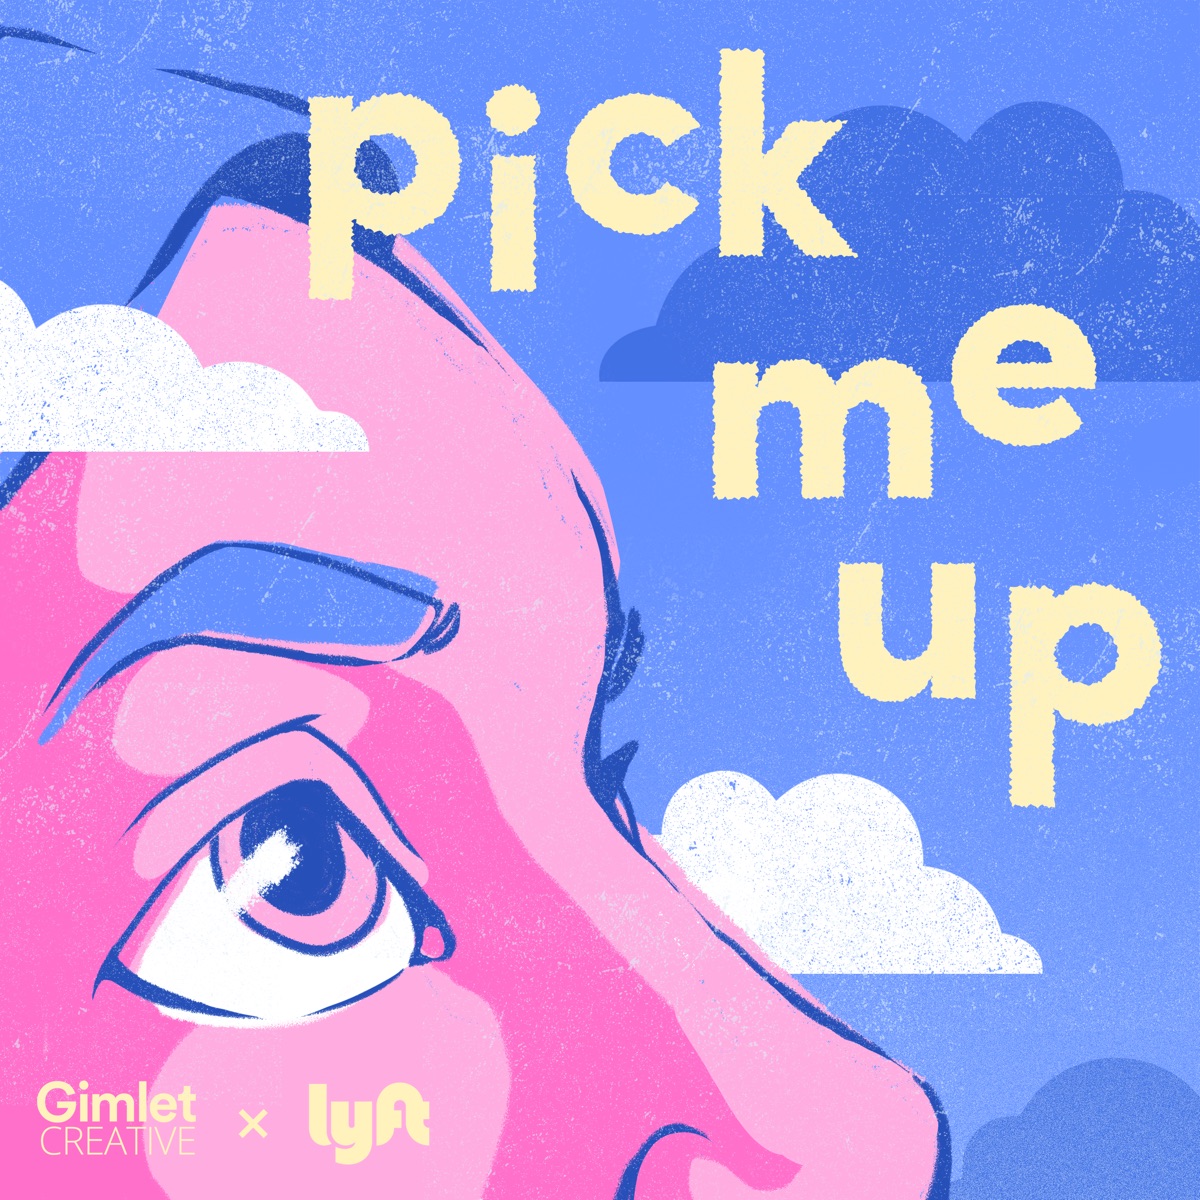 Pick me. Pick me up. Ап to me. Pick me up перевод. Gimlet-eyed.